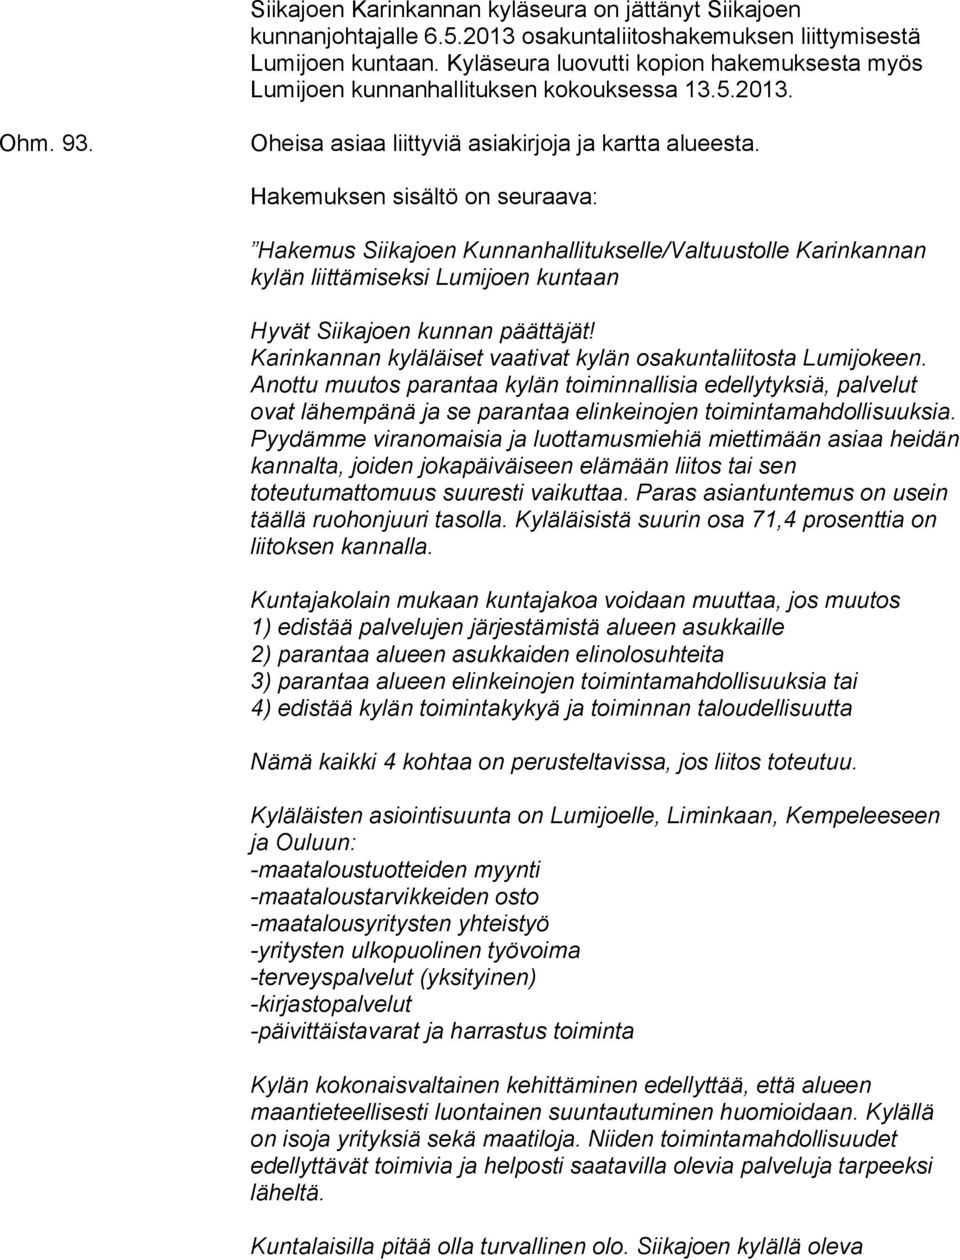 Hakemuksen sisältö on seuraava: Hakemus Siikajoen Kunnanhallitukselle/Valtuustolle Karinkannan kylän liittämiseksi Lumijoen kuntaan Hyvät Siikajoen kunnan päättäjät!